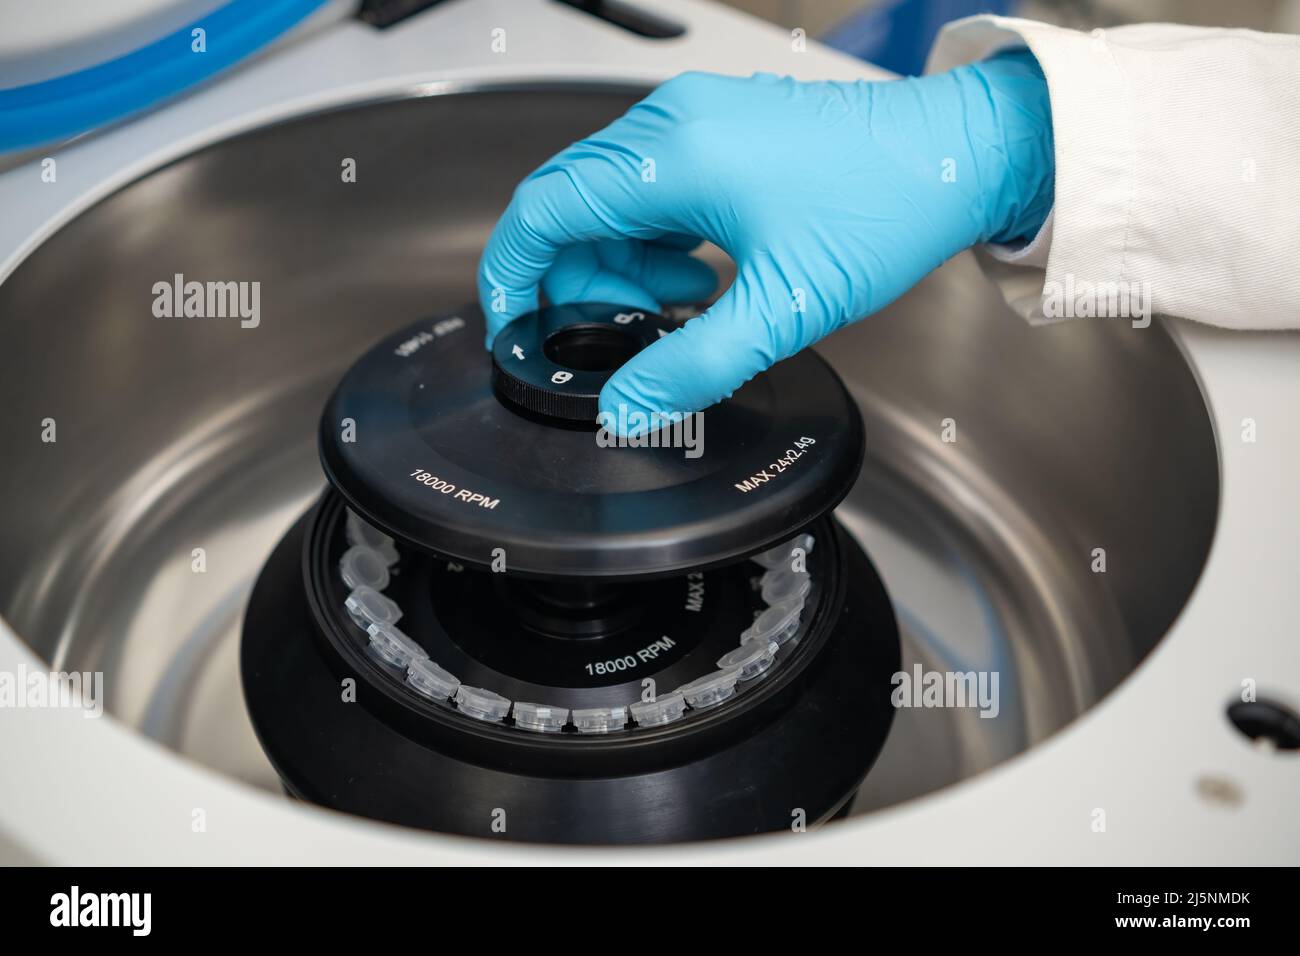 Eine Laborantin mit Gummihandschuhen befüllt eine Zentrifuge und schließt die Kappe. DNA-Test oder onglogy Marker Tests Konzept. Stockfoto